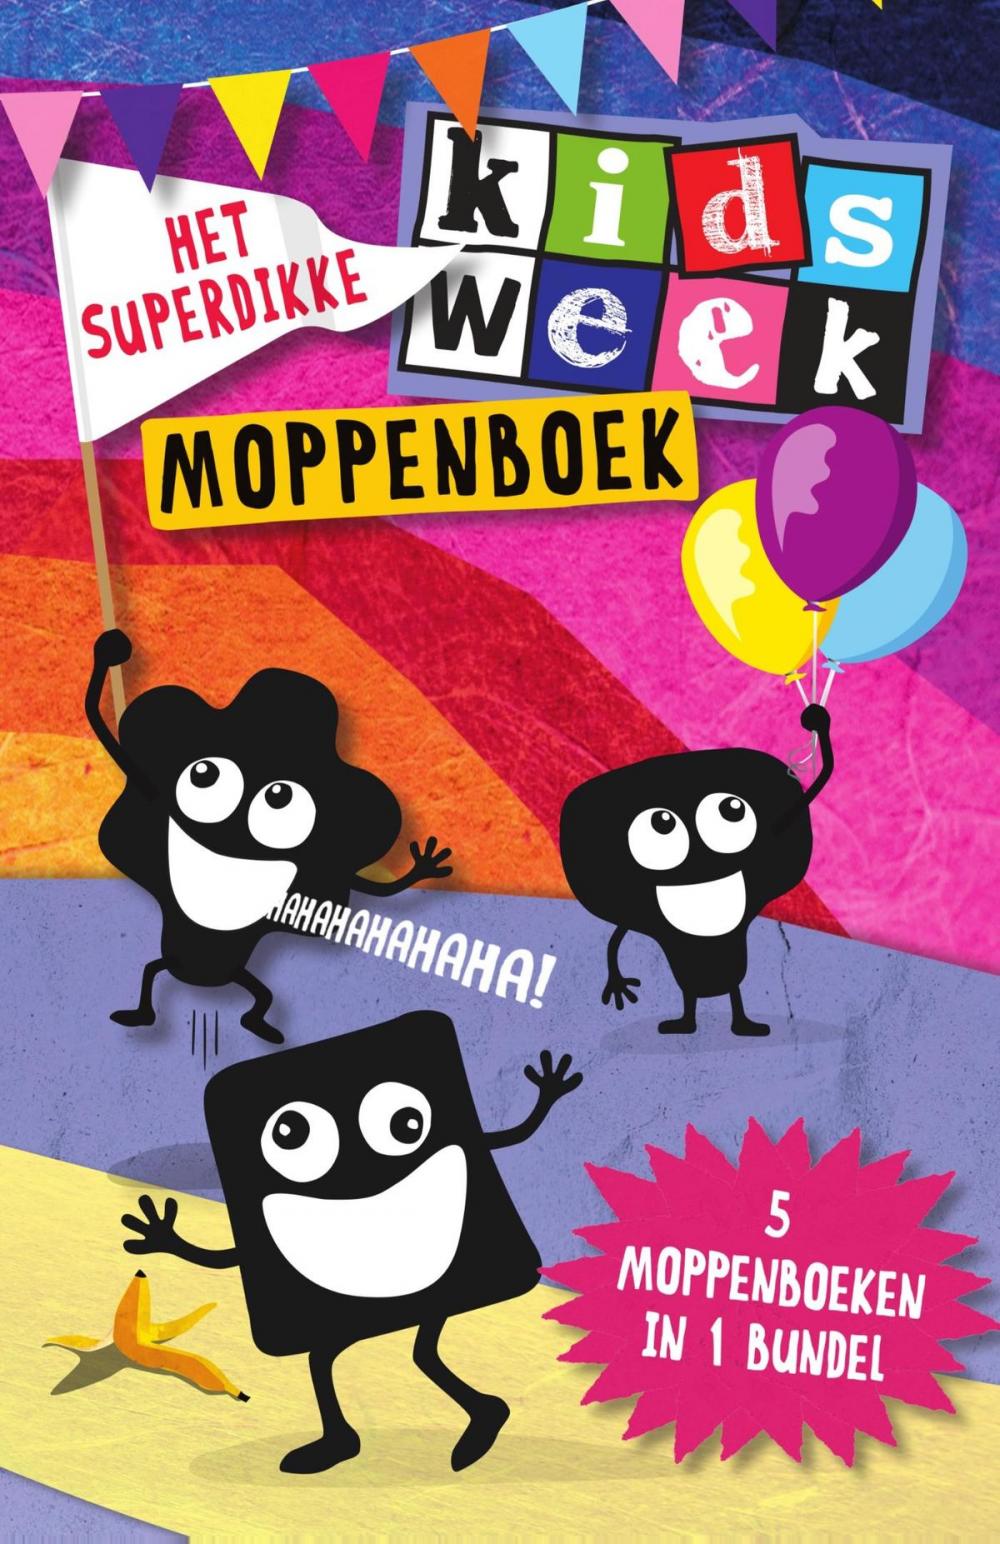 Big bigCover of Het superdikke Kidsweek moppenboek